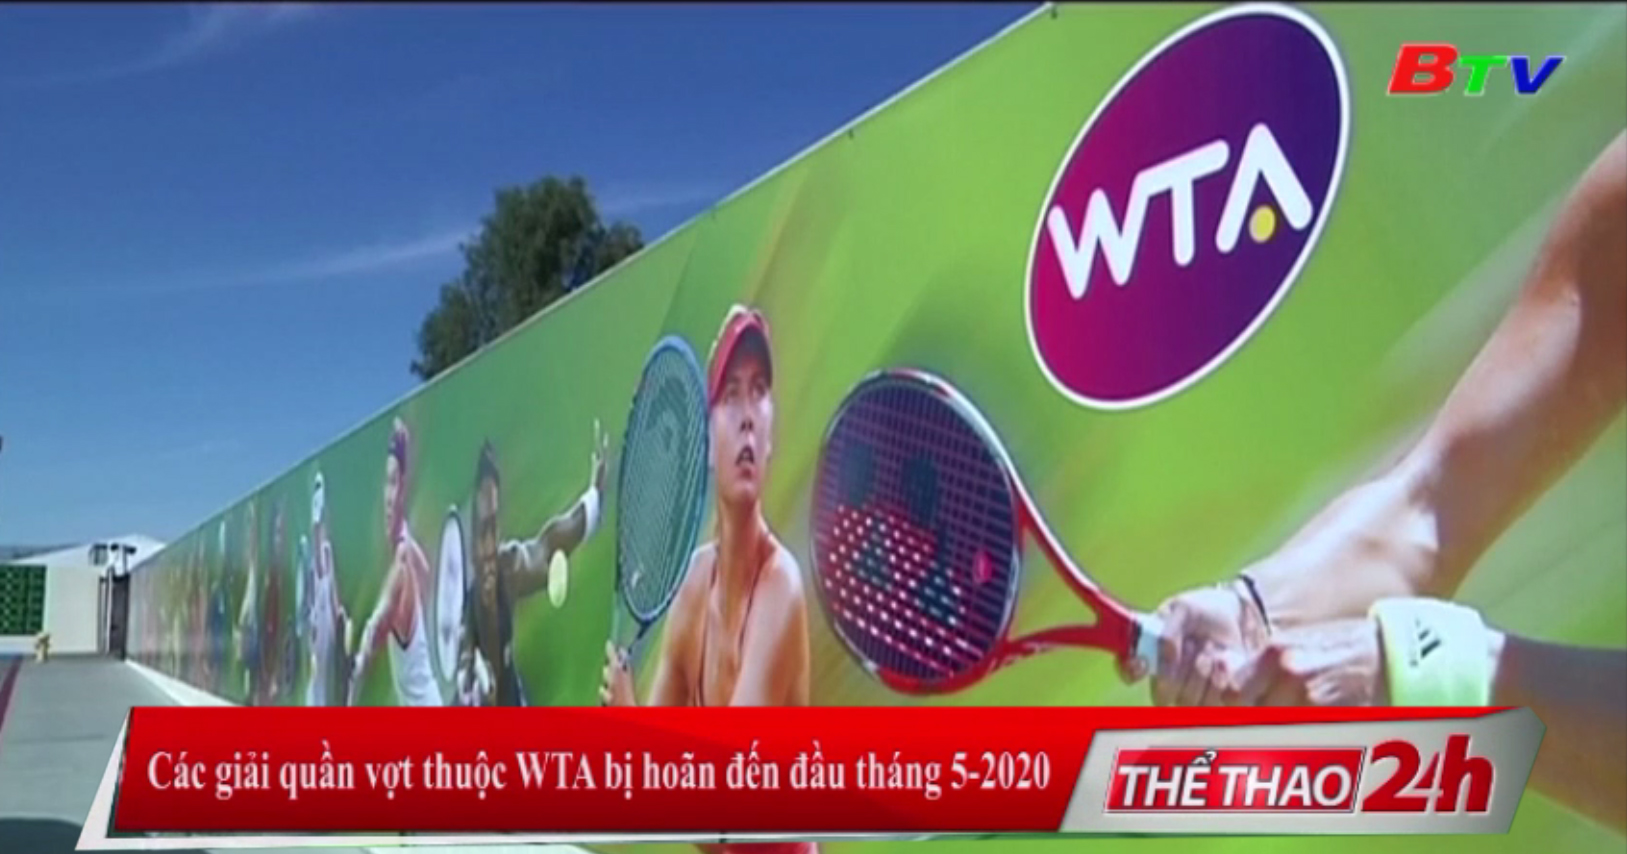 Các giải quần vợt thuộc WTA bị hoãn đến đầu tháng 5-2020